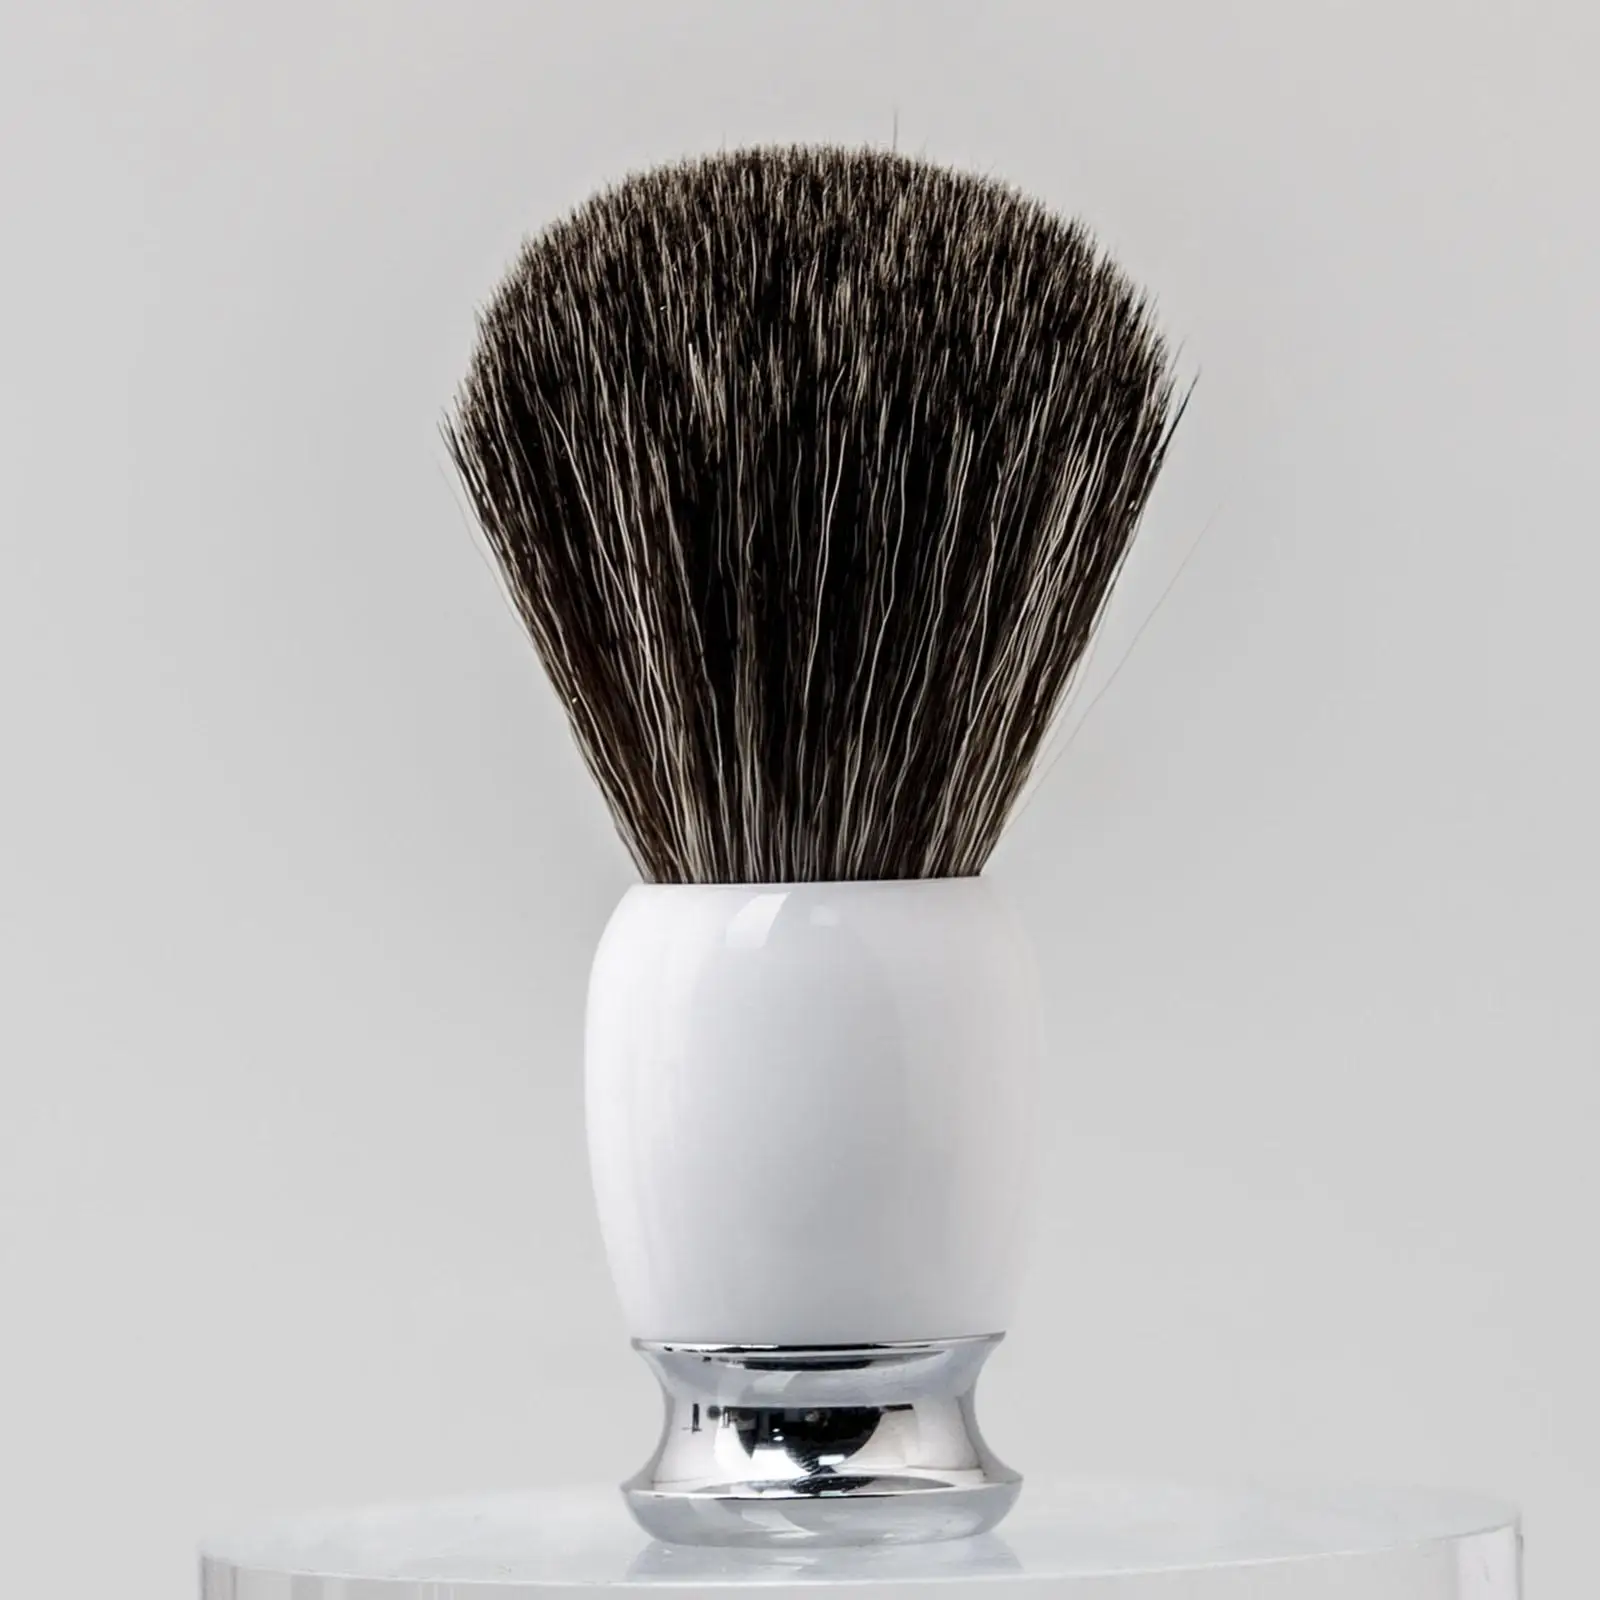 Hair Shaving Brush Beard Brush Soap Brush Travel Luxury Shave Accessory for Professional Barber Salon Tools Shaving Cream Brush